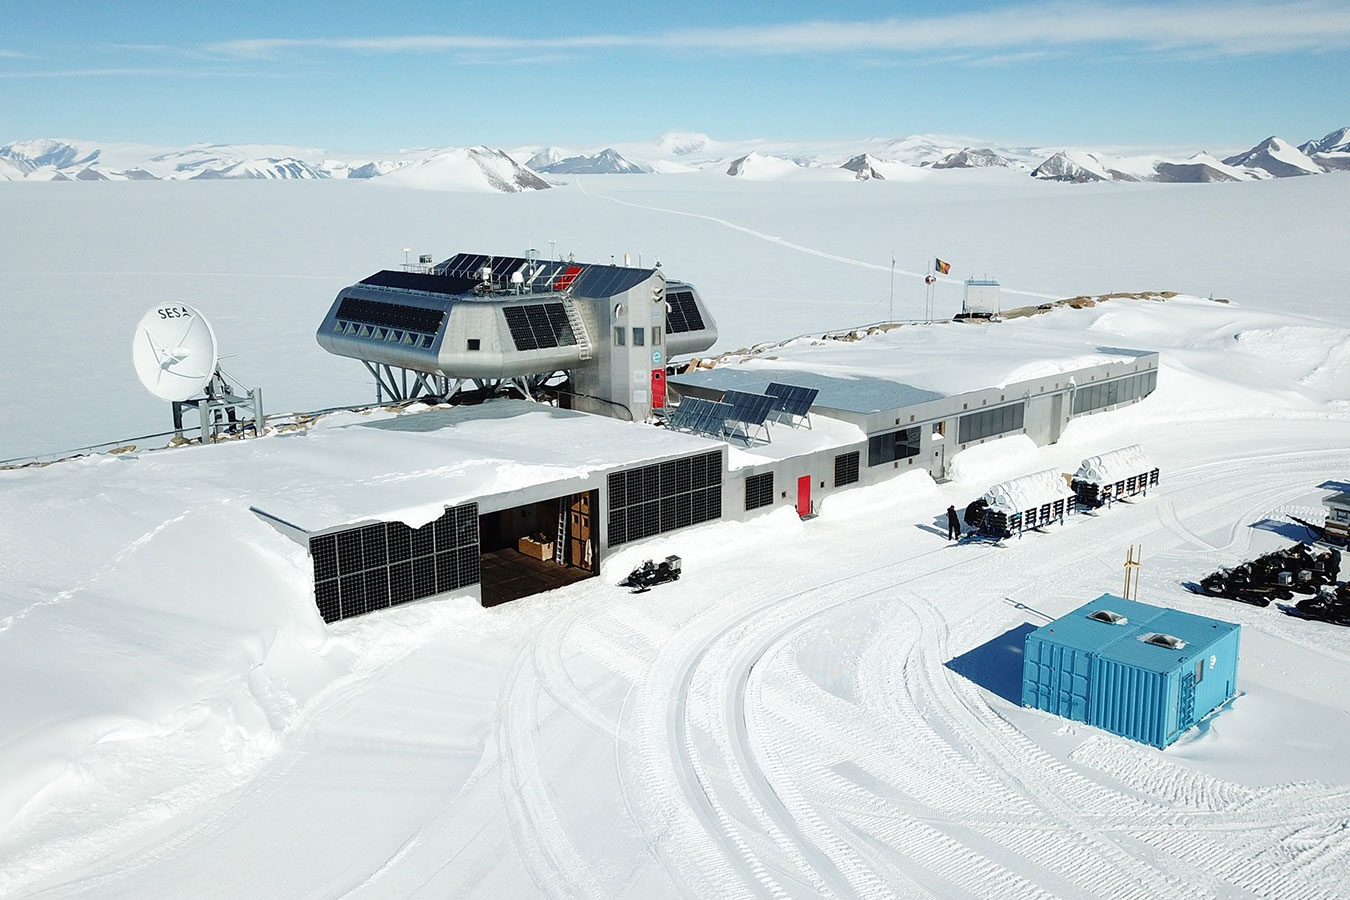 Chùm ảnh: Bữa ăn trong trạm nghiên cứu ở nơi khắc nghiệt nhất Nam Cực